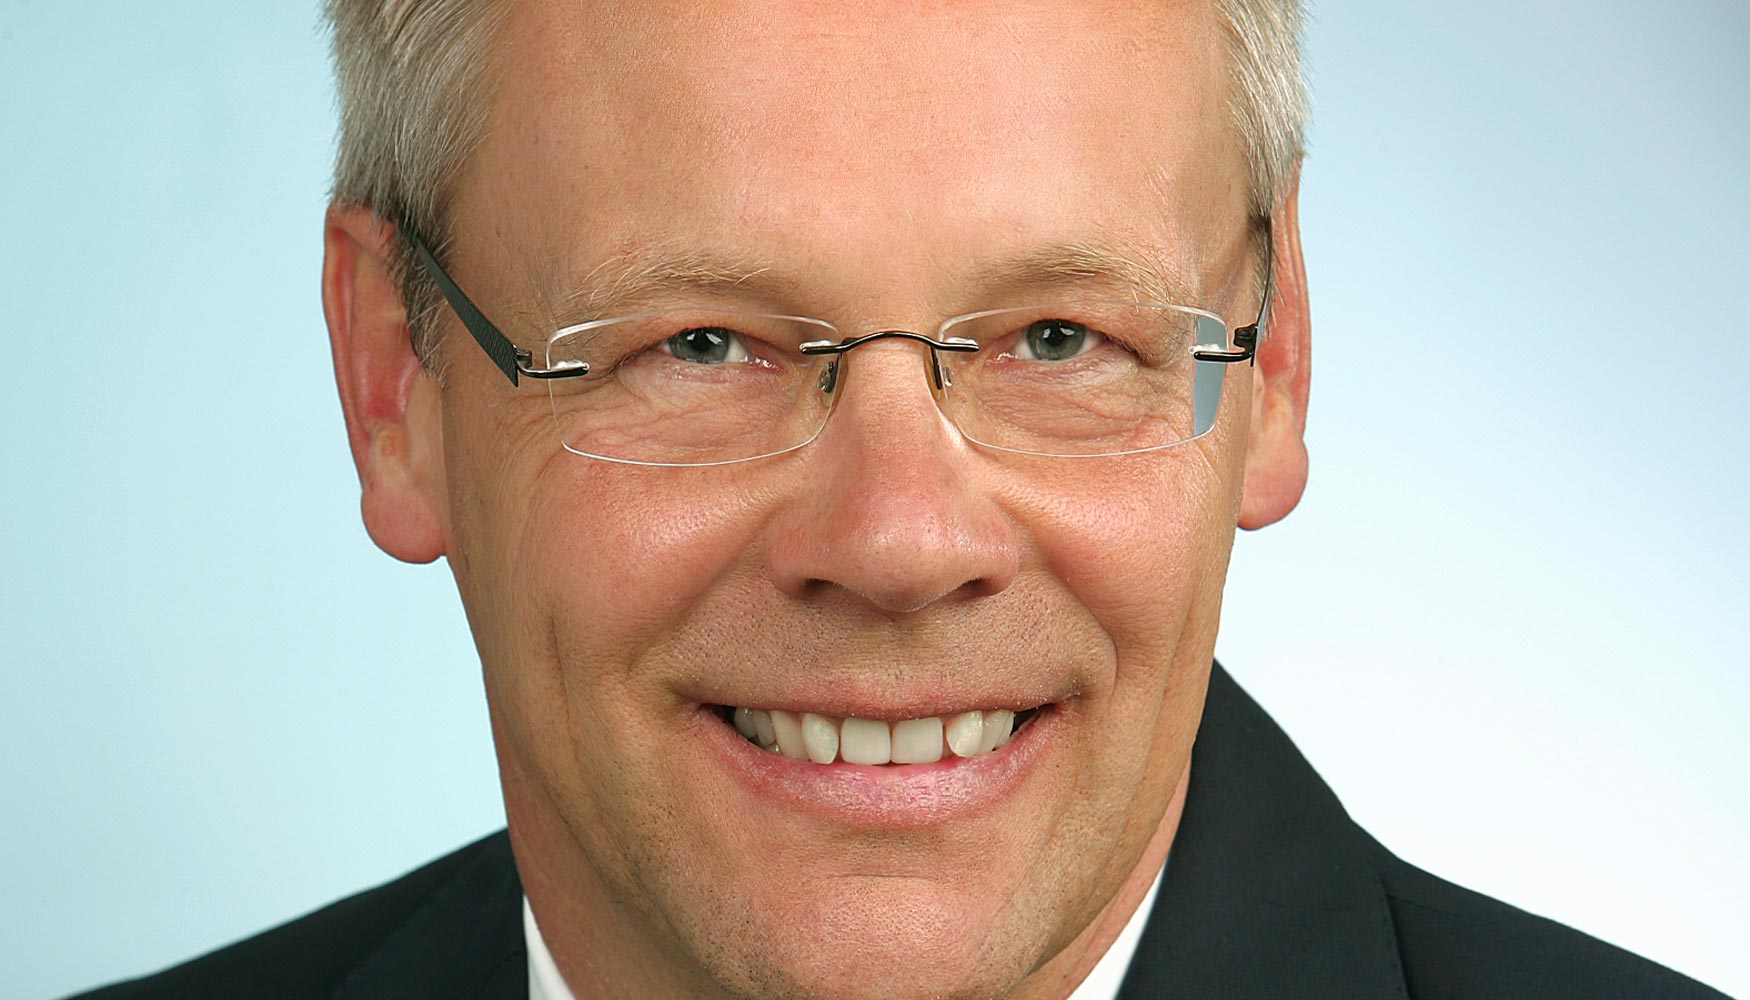 Friedemann Lell, jefe de ventas en Sauer GmbH, corresponsable de tecnologa lser aditiva en el grupo DMG MORI